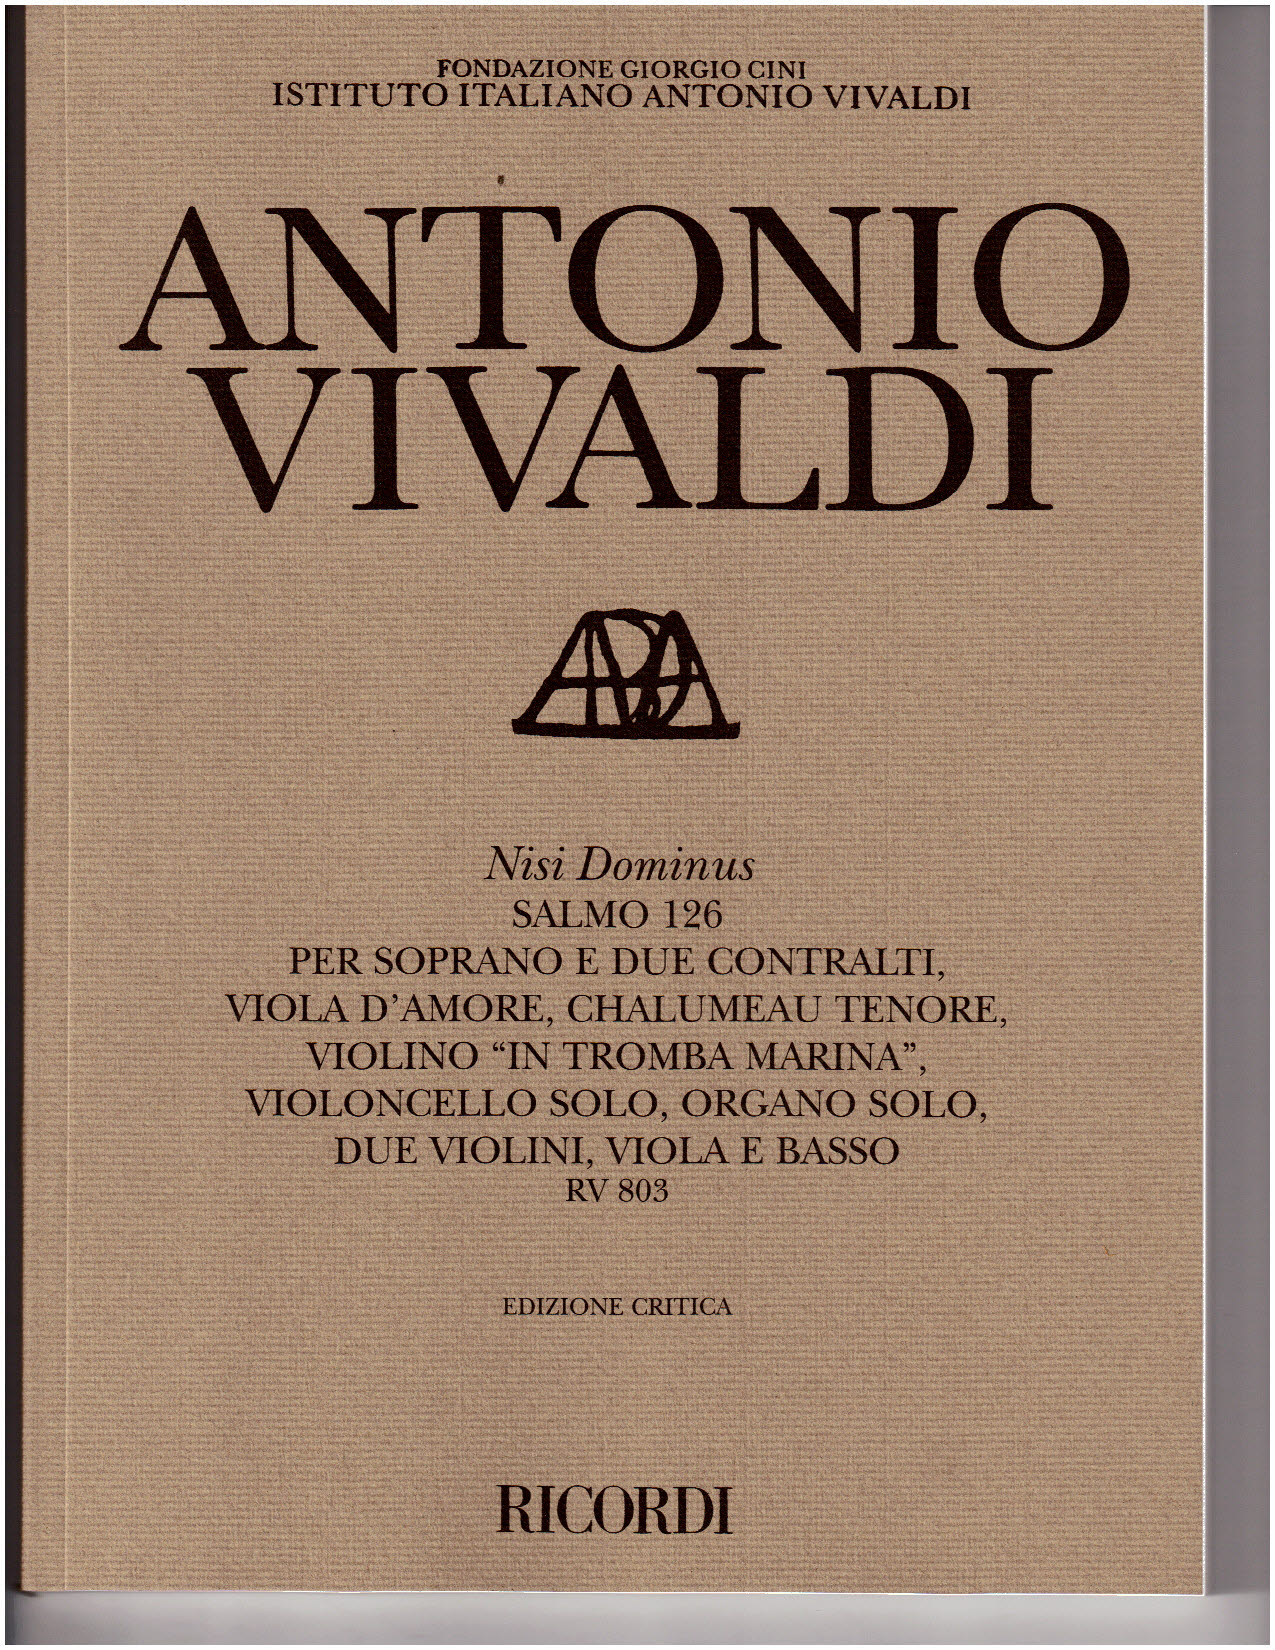 Nisi Dominus, Rv 803. Salmo 126 Per Soprano, Due Contralti Viola D'Amore, Chalumeau Tenore, Violino 'In Tromba Marina (VIVALDI ANTONIO)